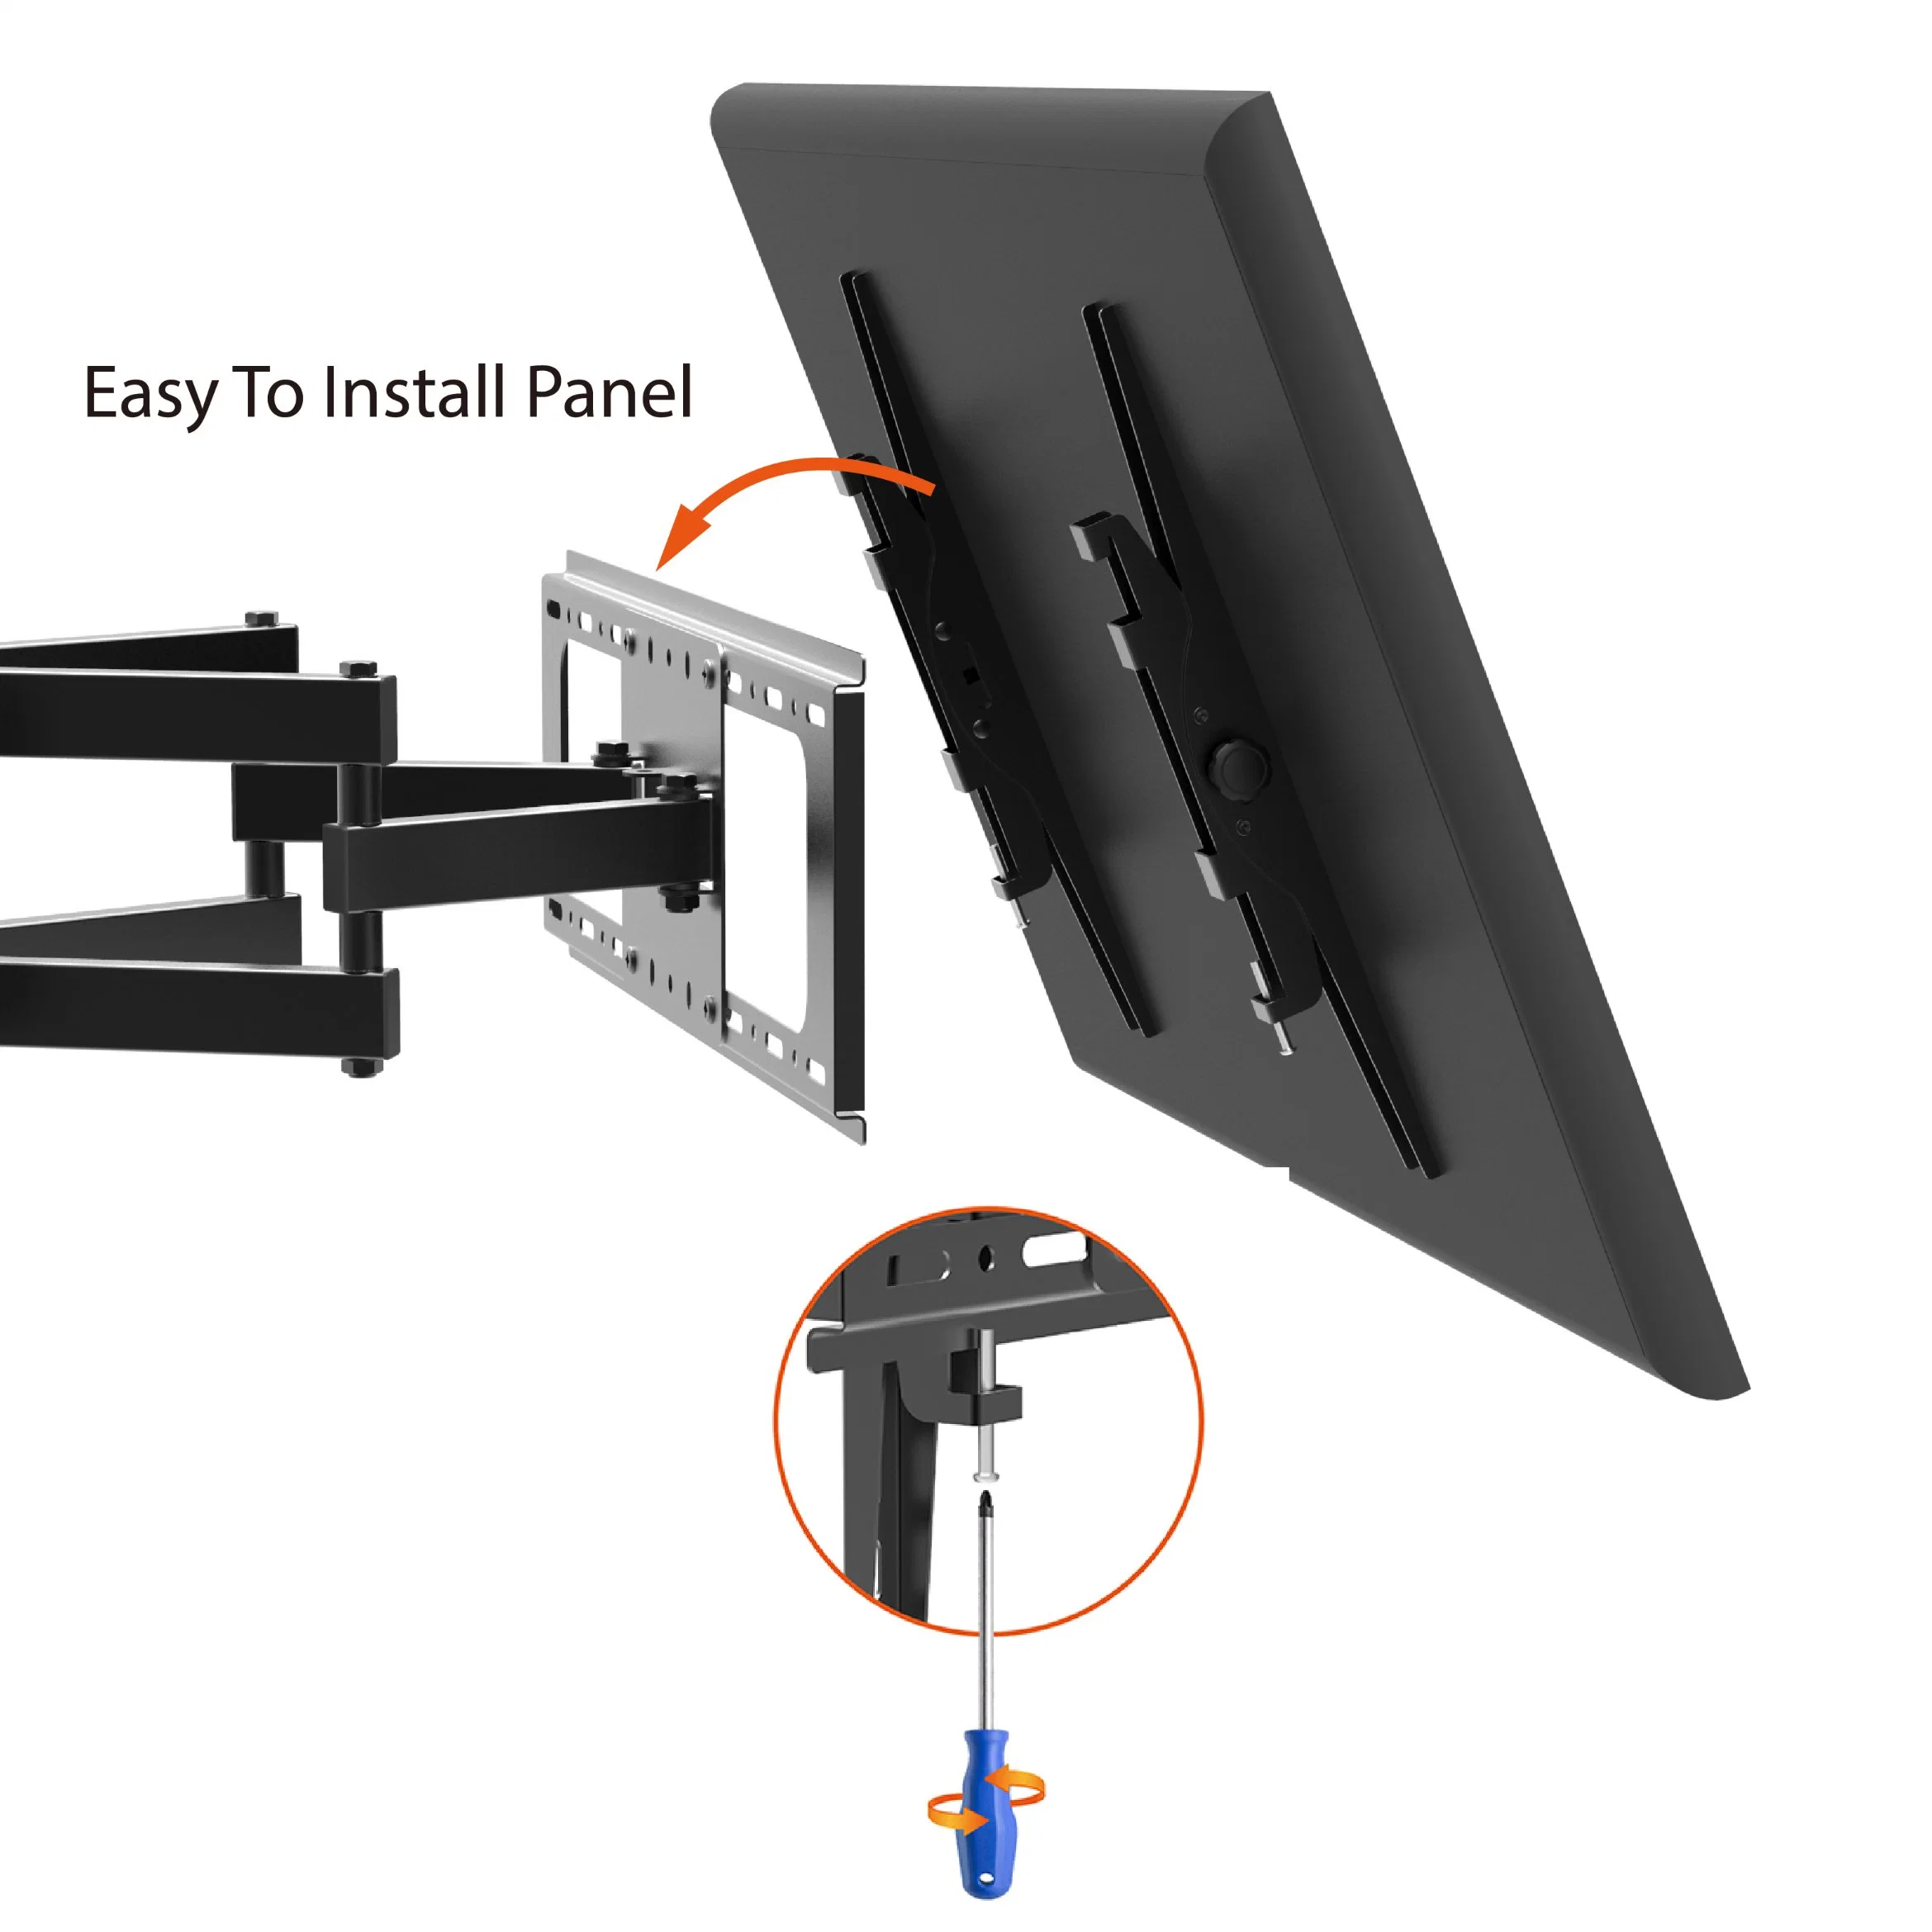 Charmount Factory Direct Adjustable 600*400 Full Motion Swivel Tilt LCD LED TV Wall Mount for 32-70 Inch TV